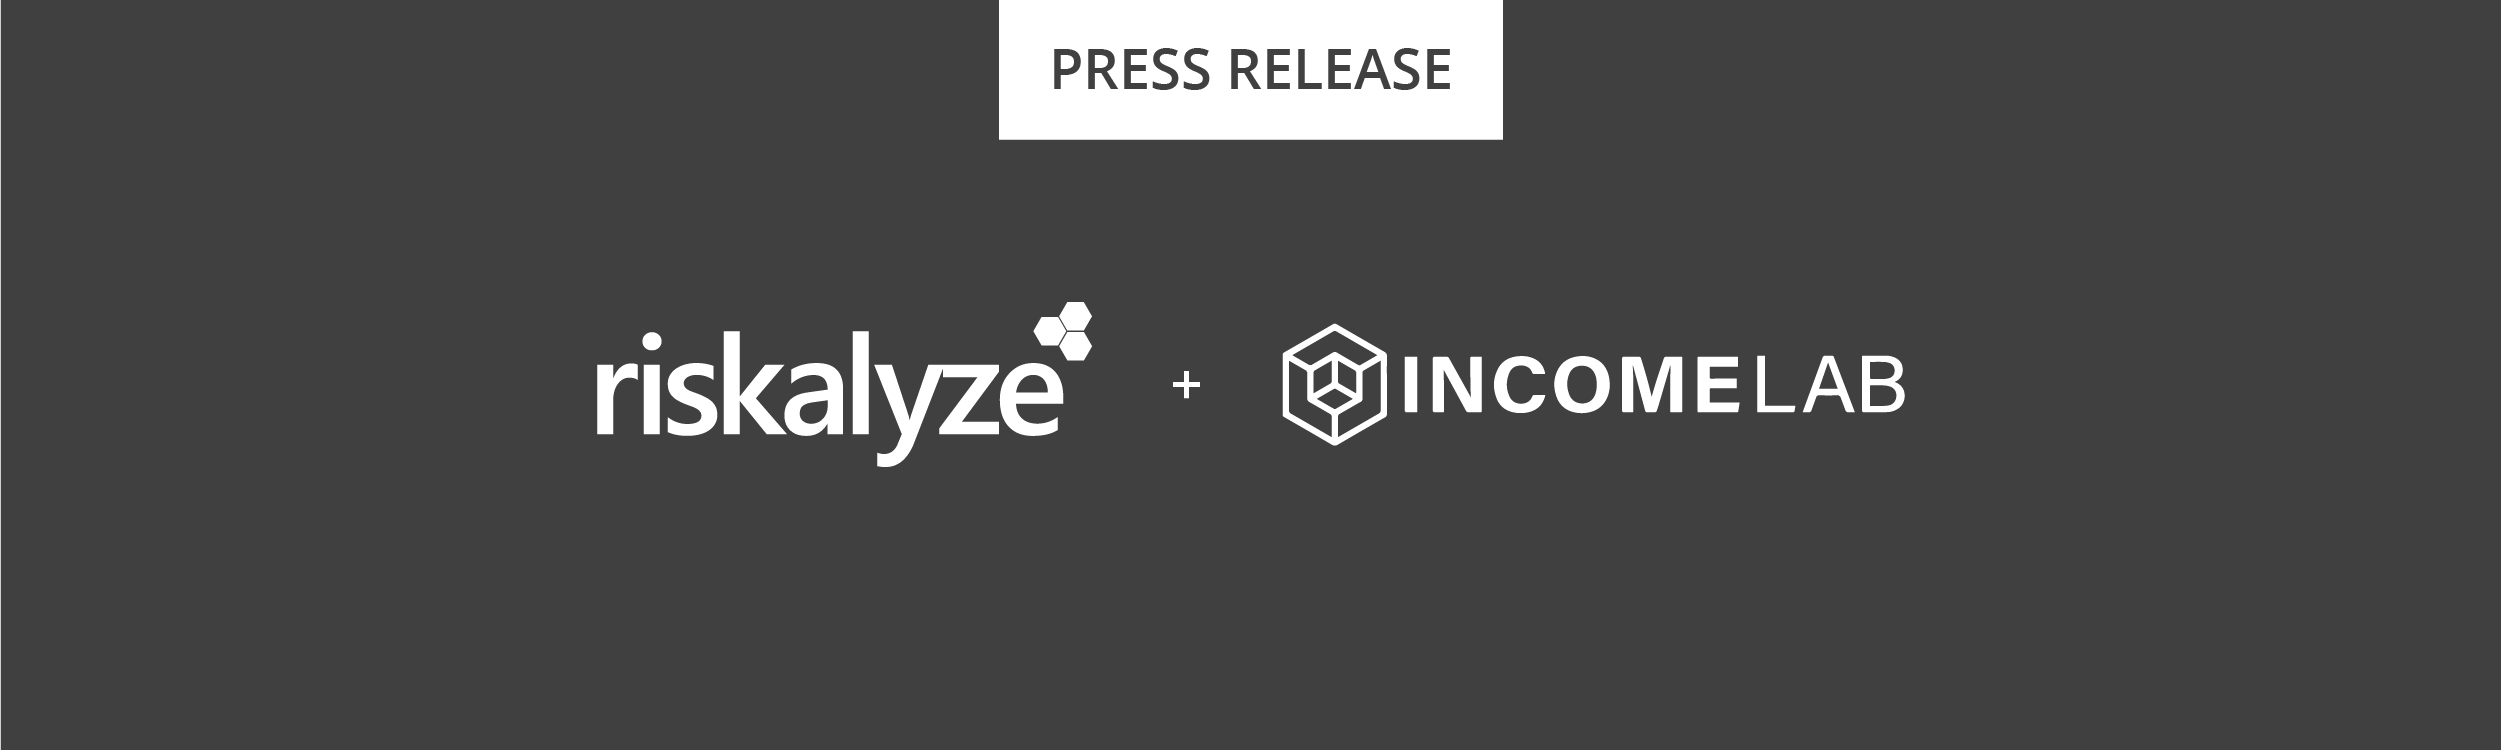 Riskalyze + Income Lab Press Release